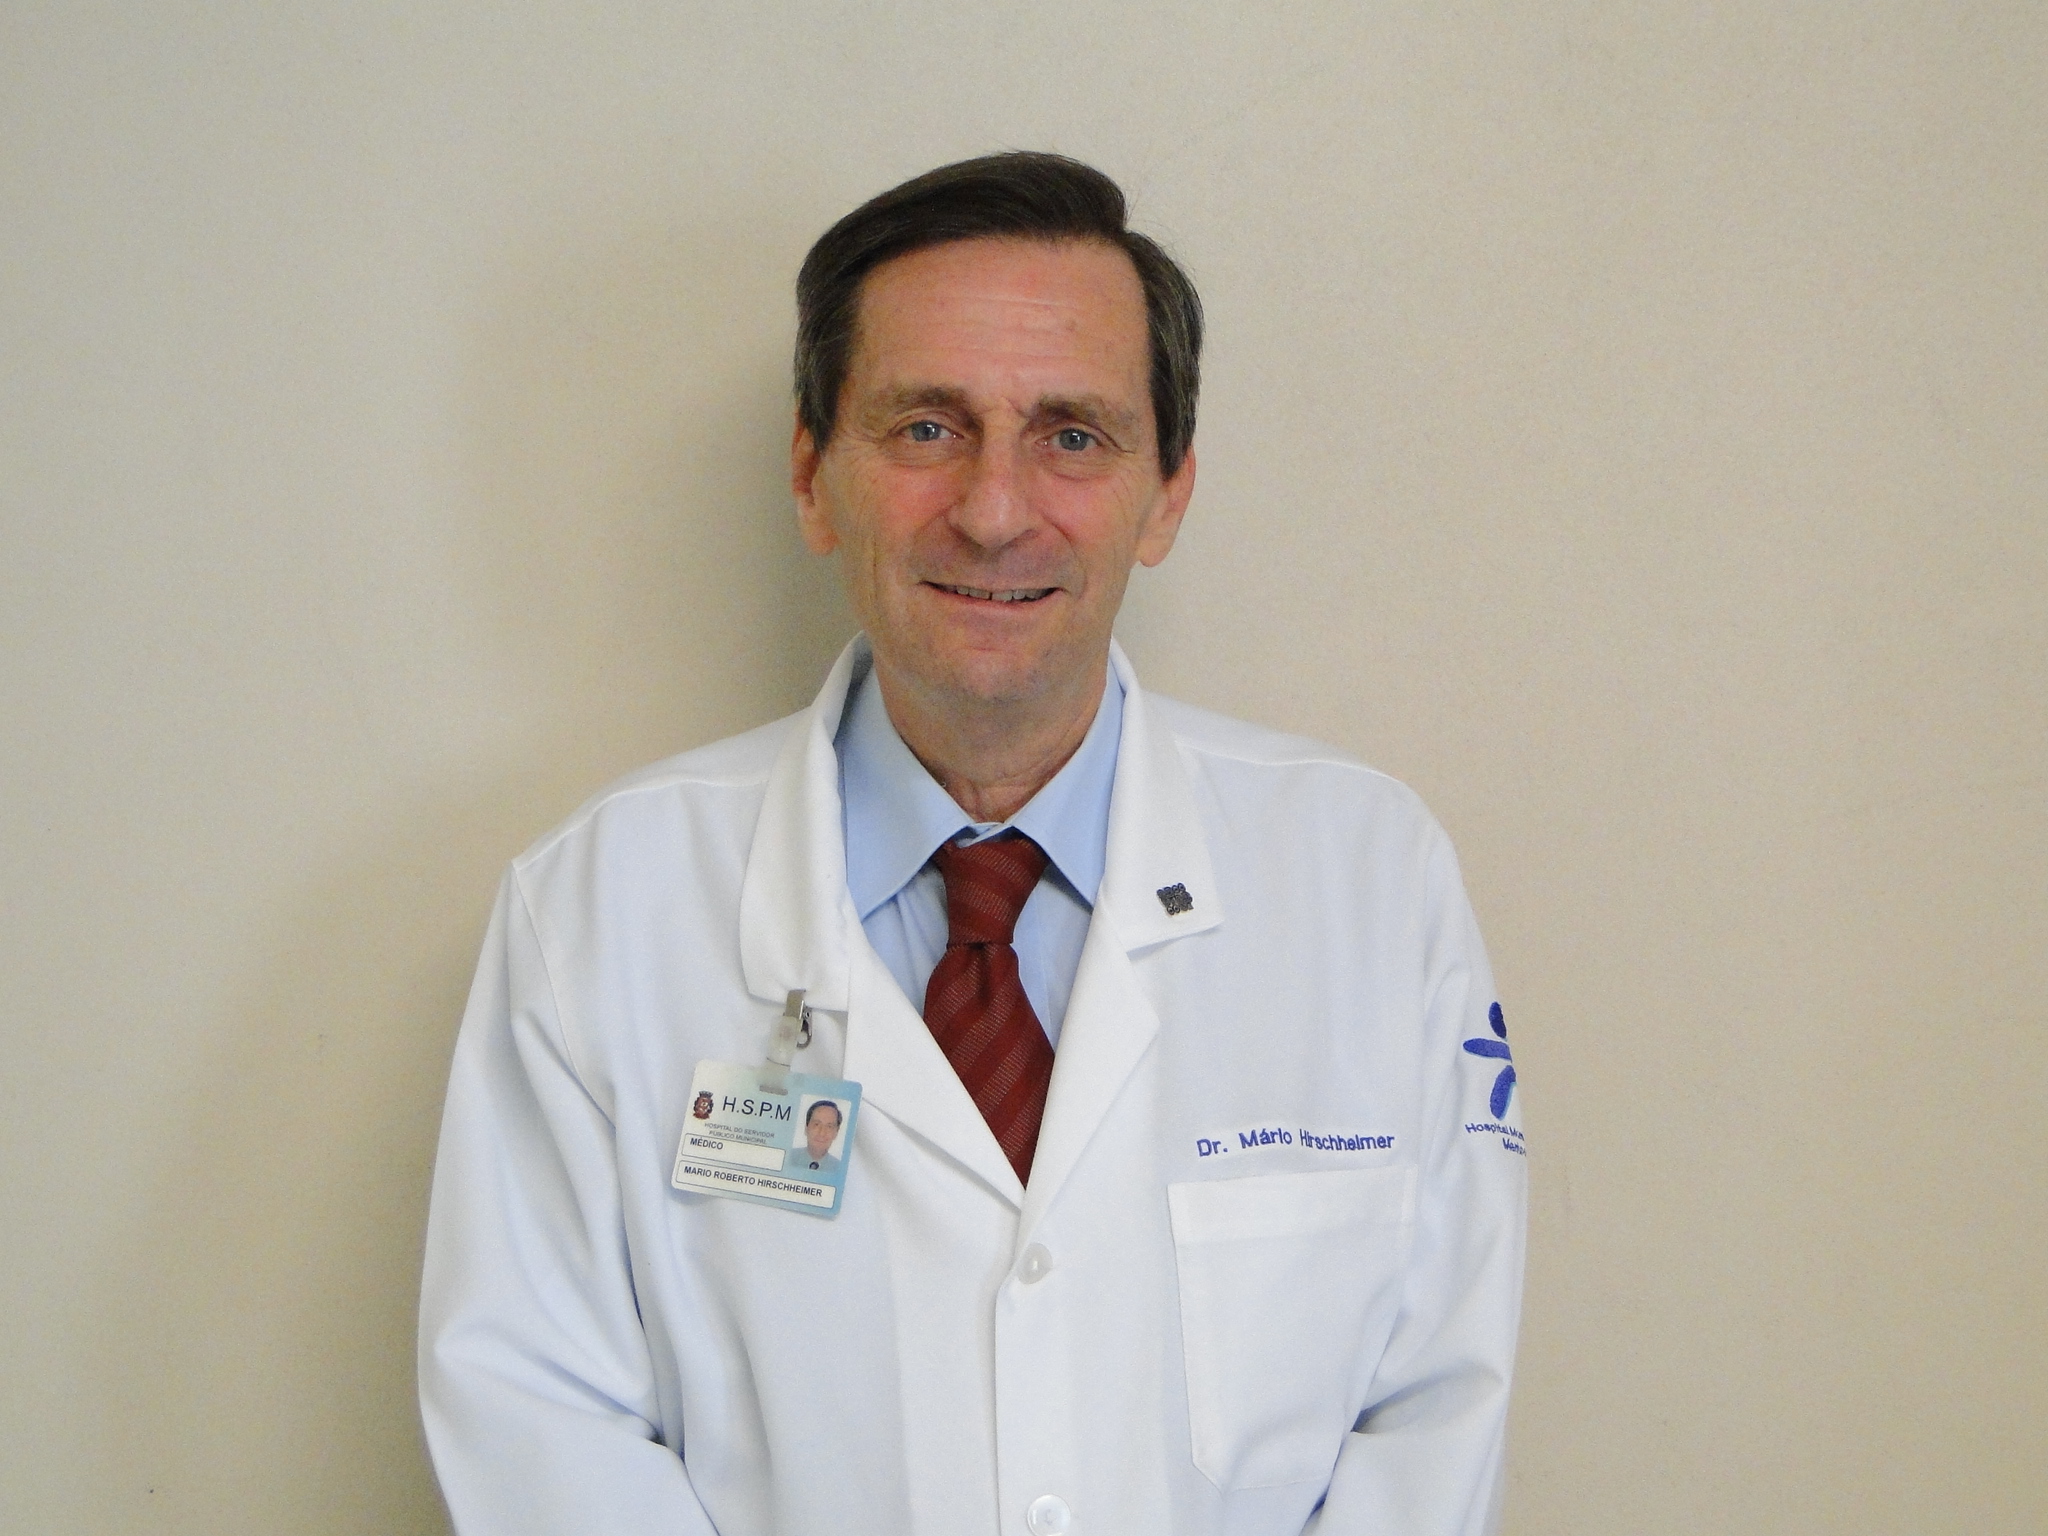 Dr. Mário Roberto Hirschheimer,  coordenador 
da Clínica de Pediatria do HSPM